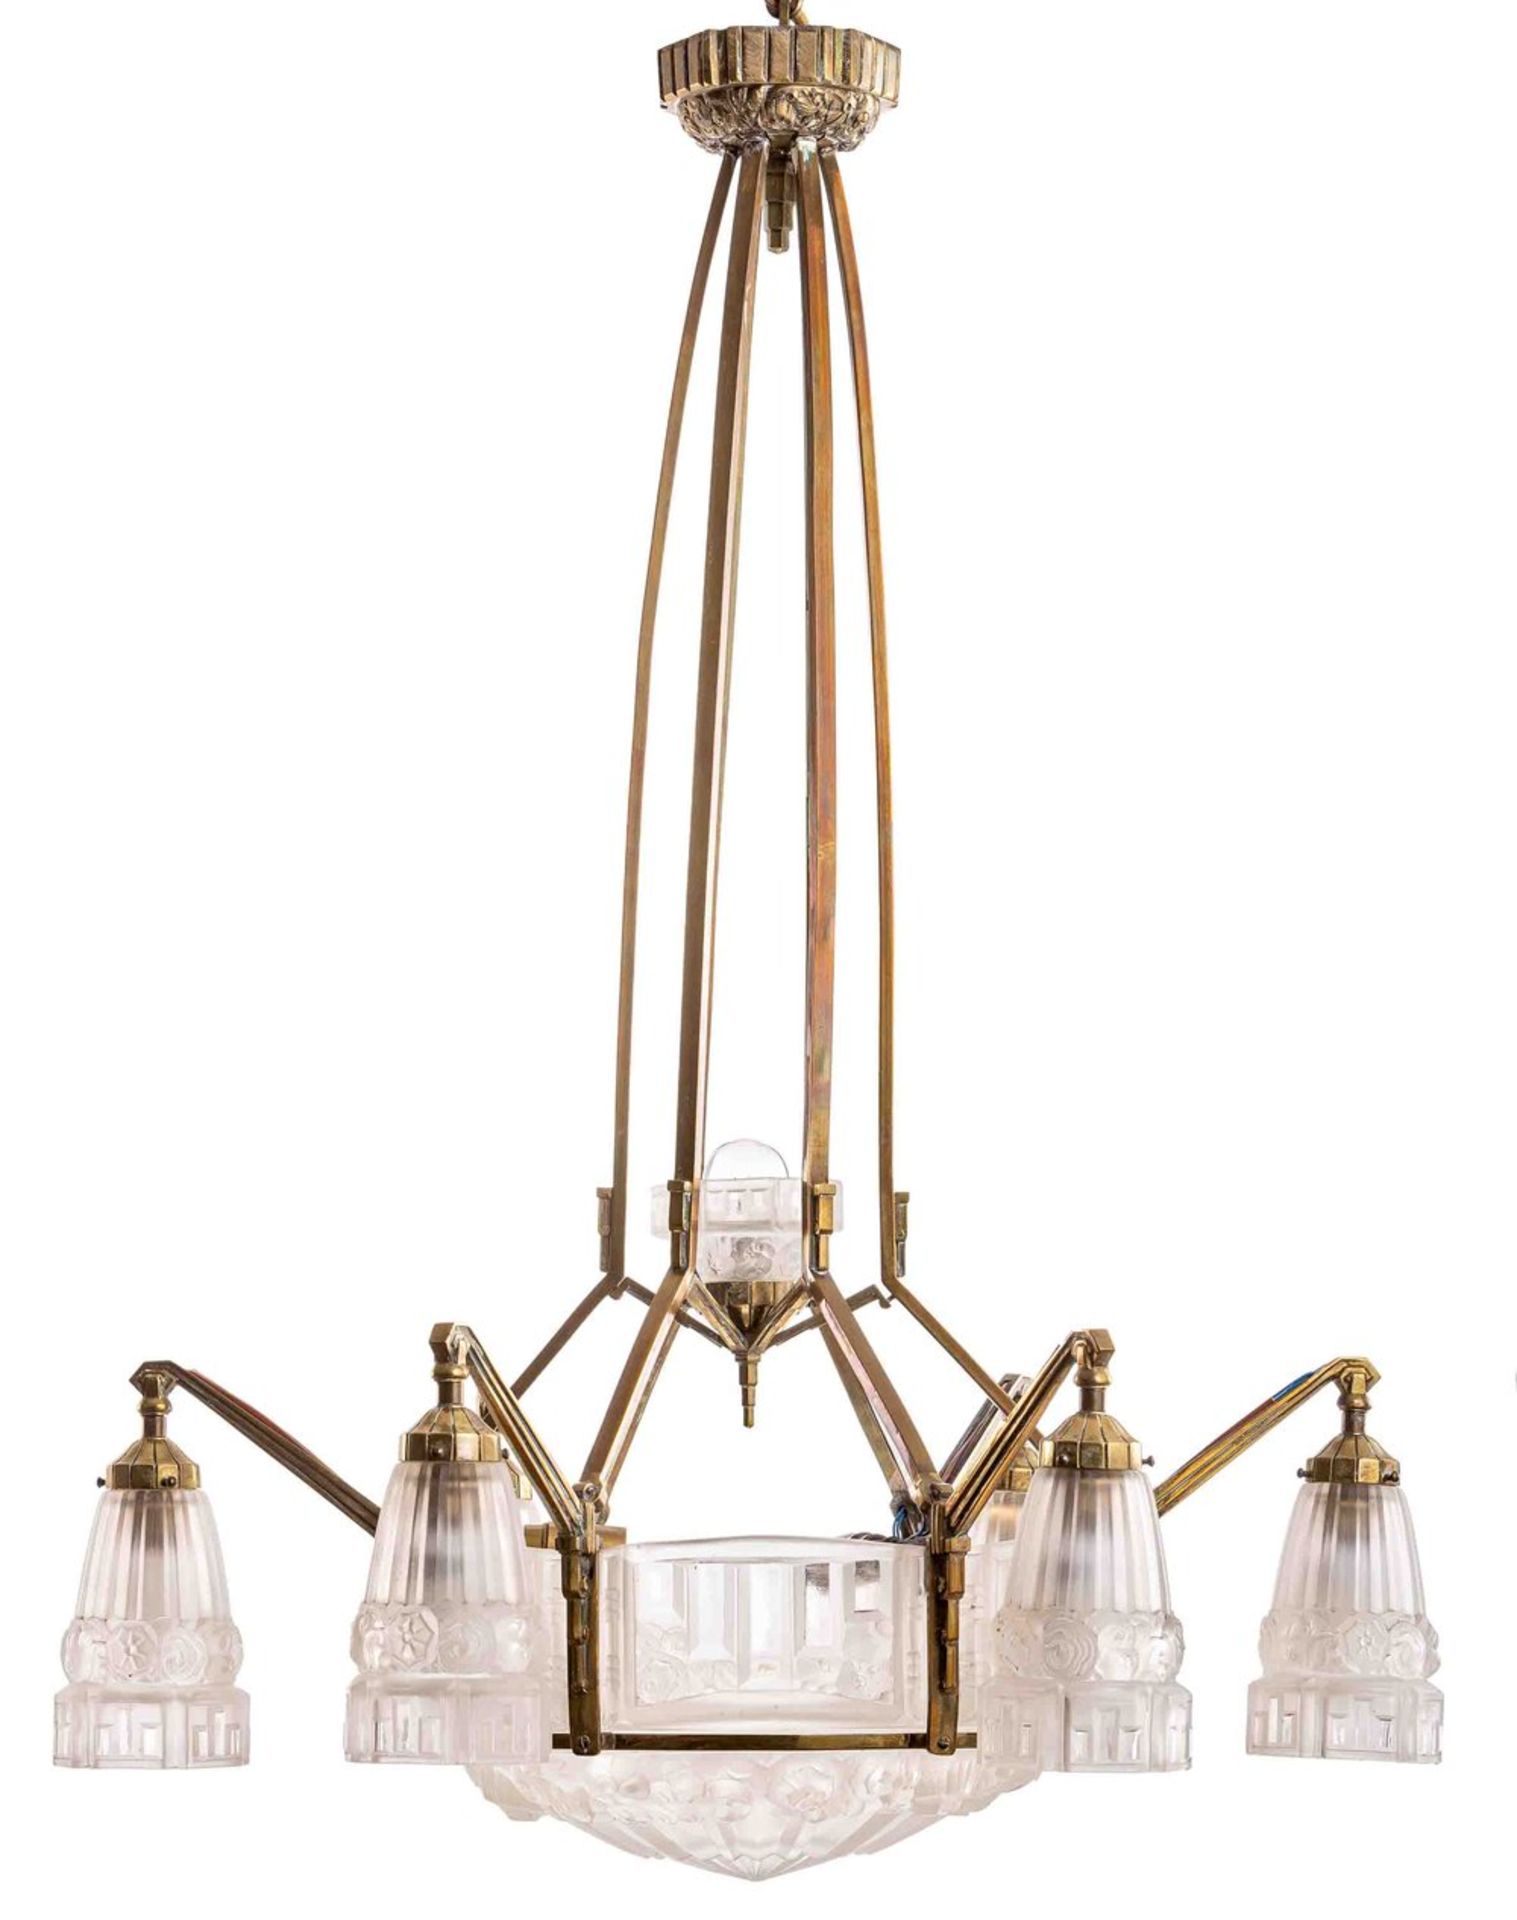 Deckenlampe Art DecoFrankreich, um 1925Messing, Pressglas, überwiegend mattiert. Zeh